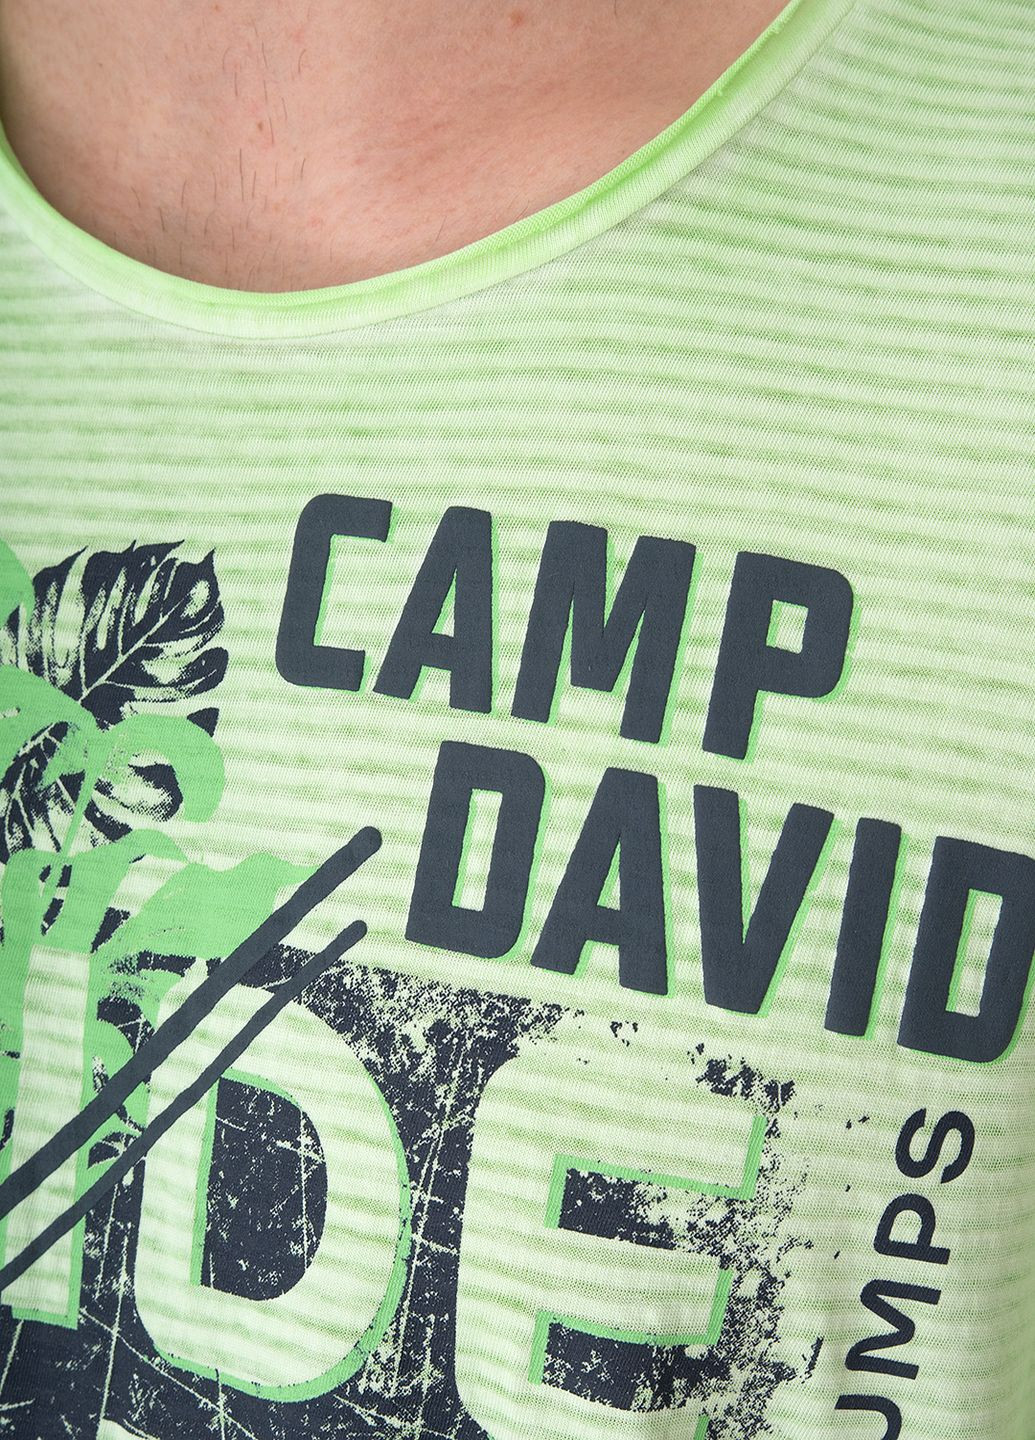 Салатовая футболка Camp David